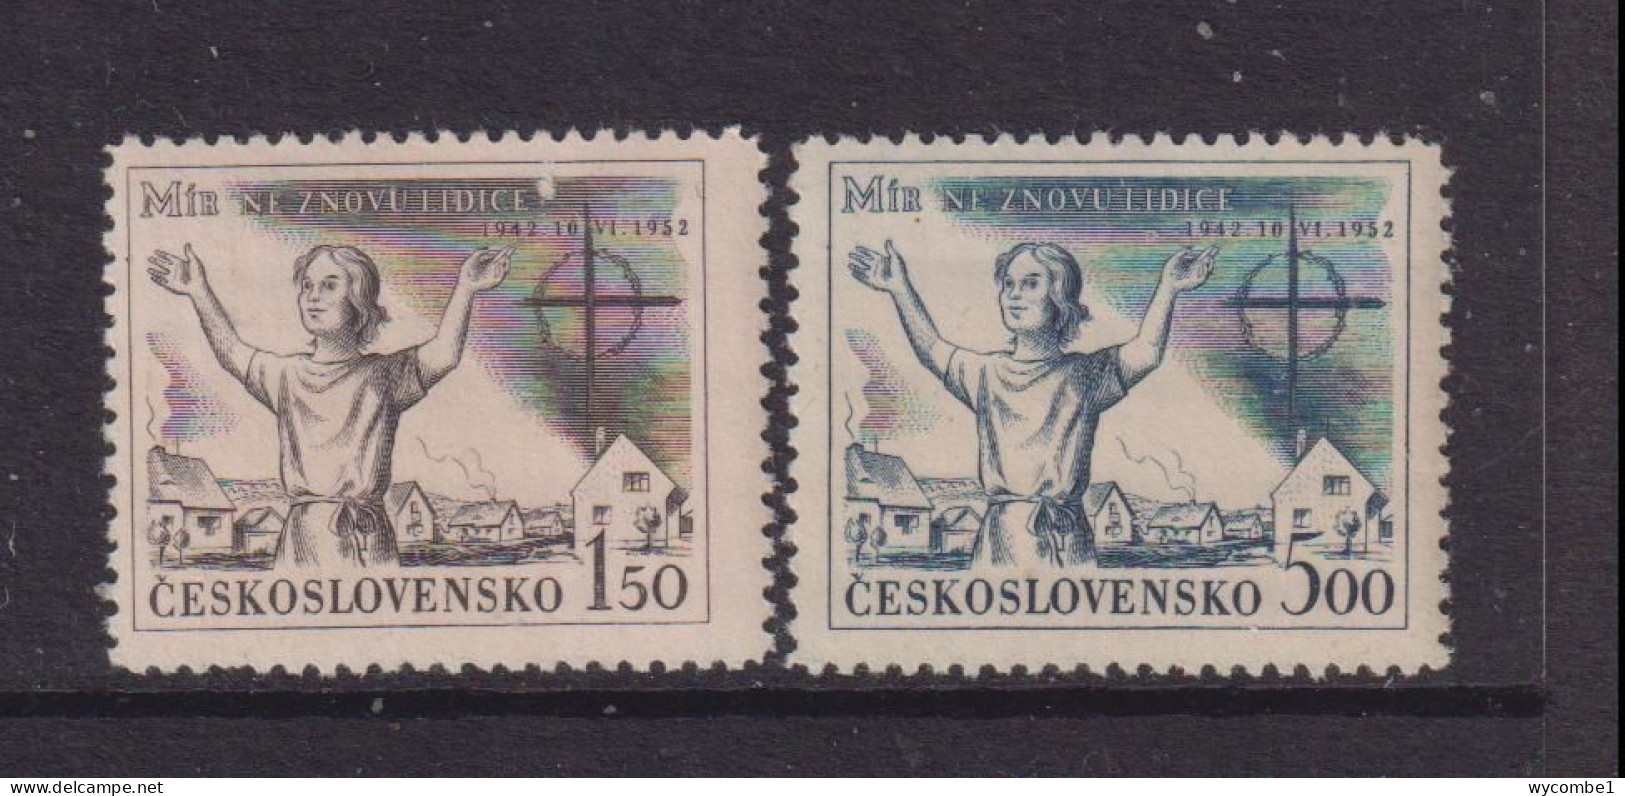 CZECHOSLOVAKIA  - 1952  Lidice Set   Never Hinged Mint - Unused Stamps